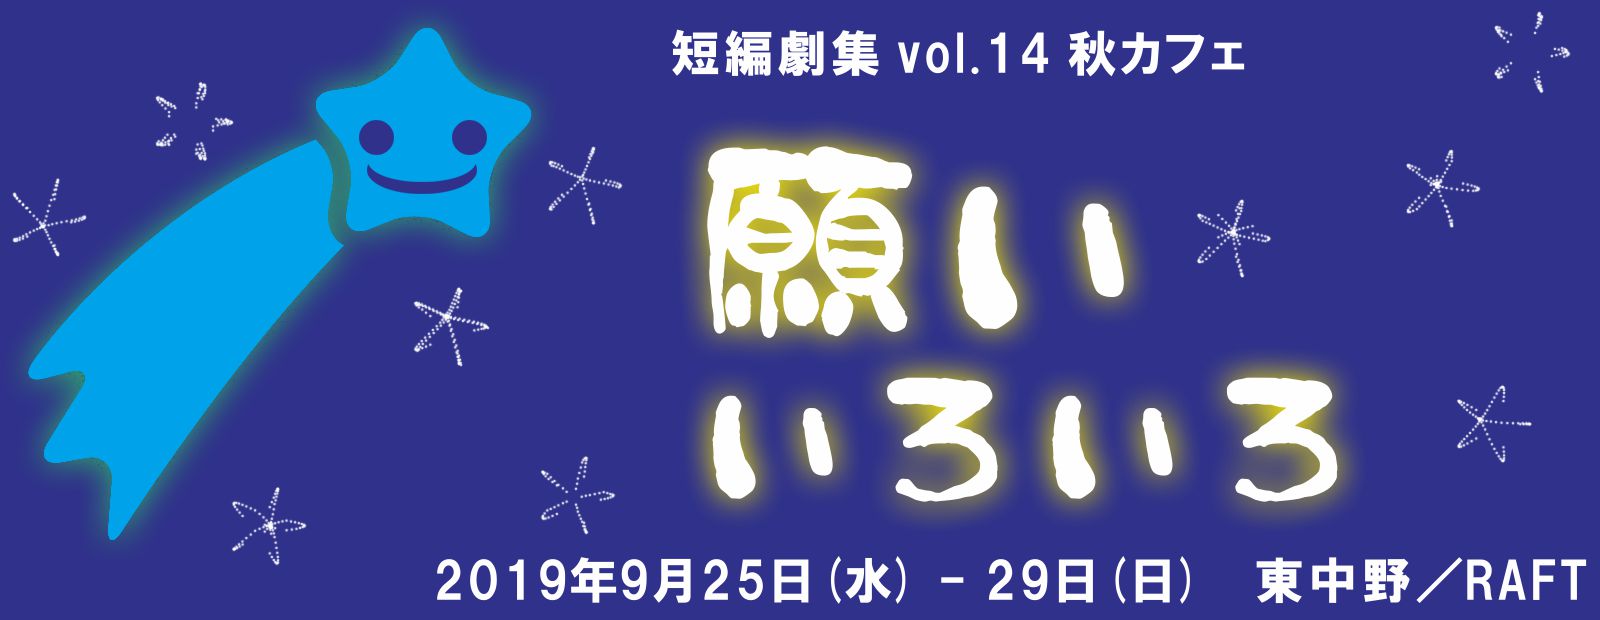 短編劇集 vol.14 秋カフェ『願いいろいろ』(2019.9.25-29)